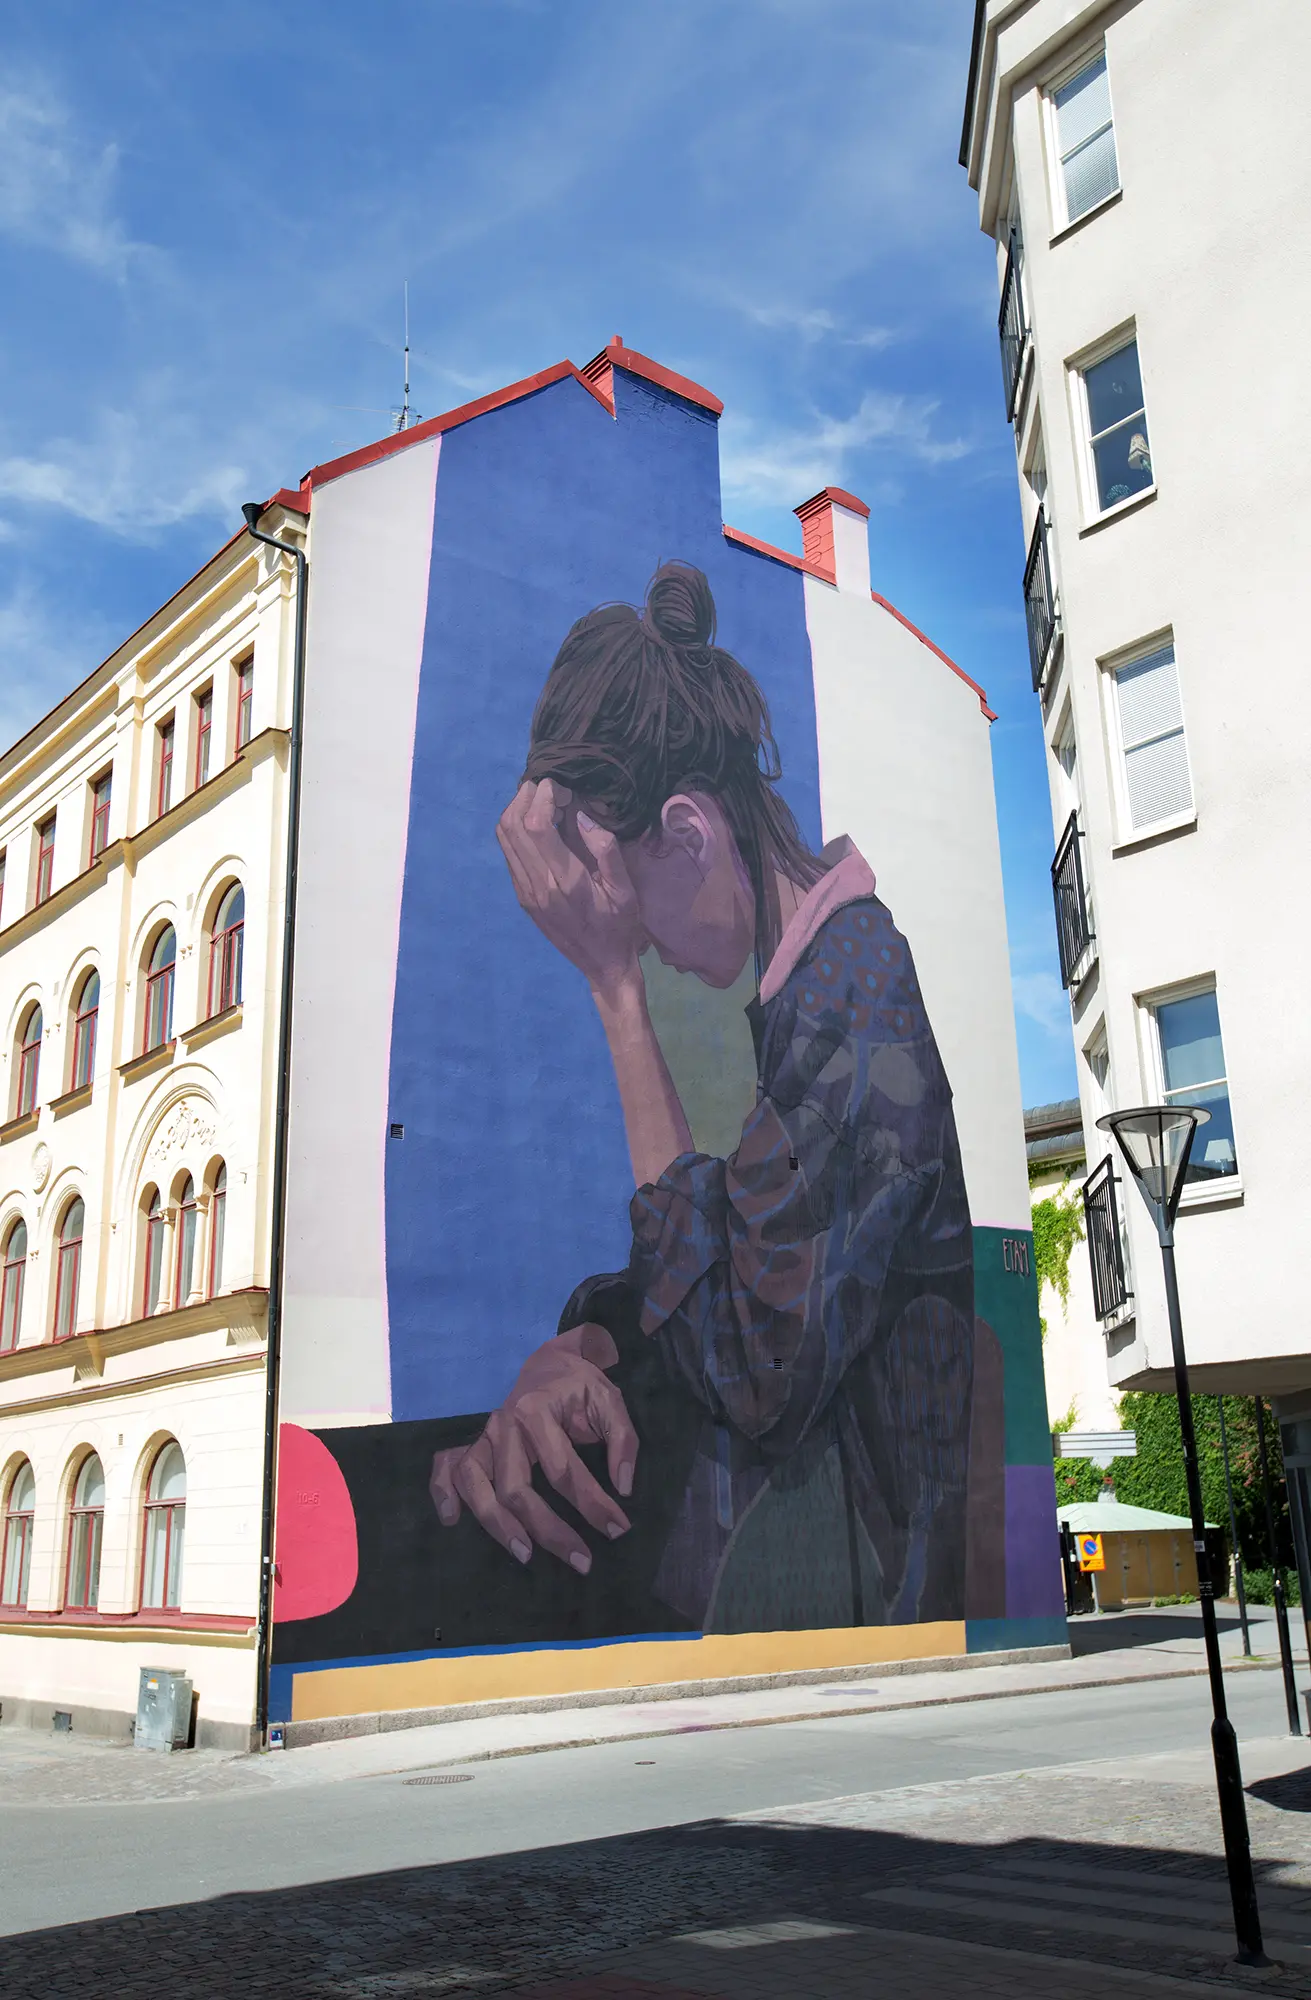 På en sidan av ett stort hus syns en stor väggmålning som täcker nästan hela väggen. Målningen föreställer en sittande kvinna som ser nedstämd ut framför en blå bakgrund. Hon lutar sitt huvud mot sin vänstra hand.